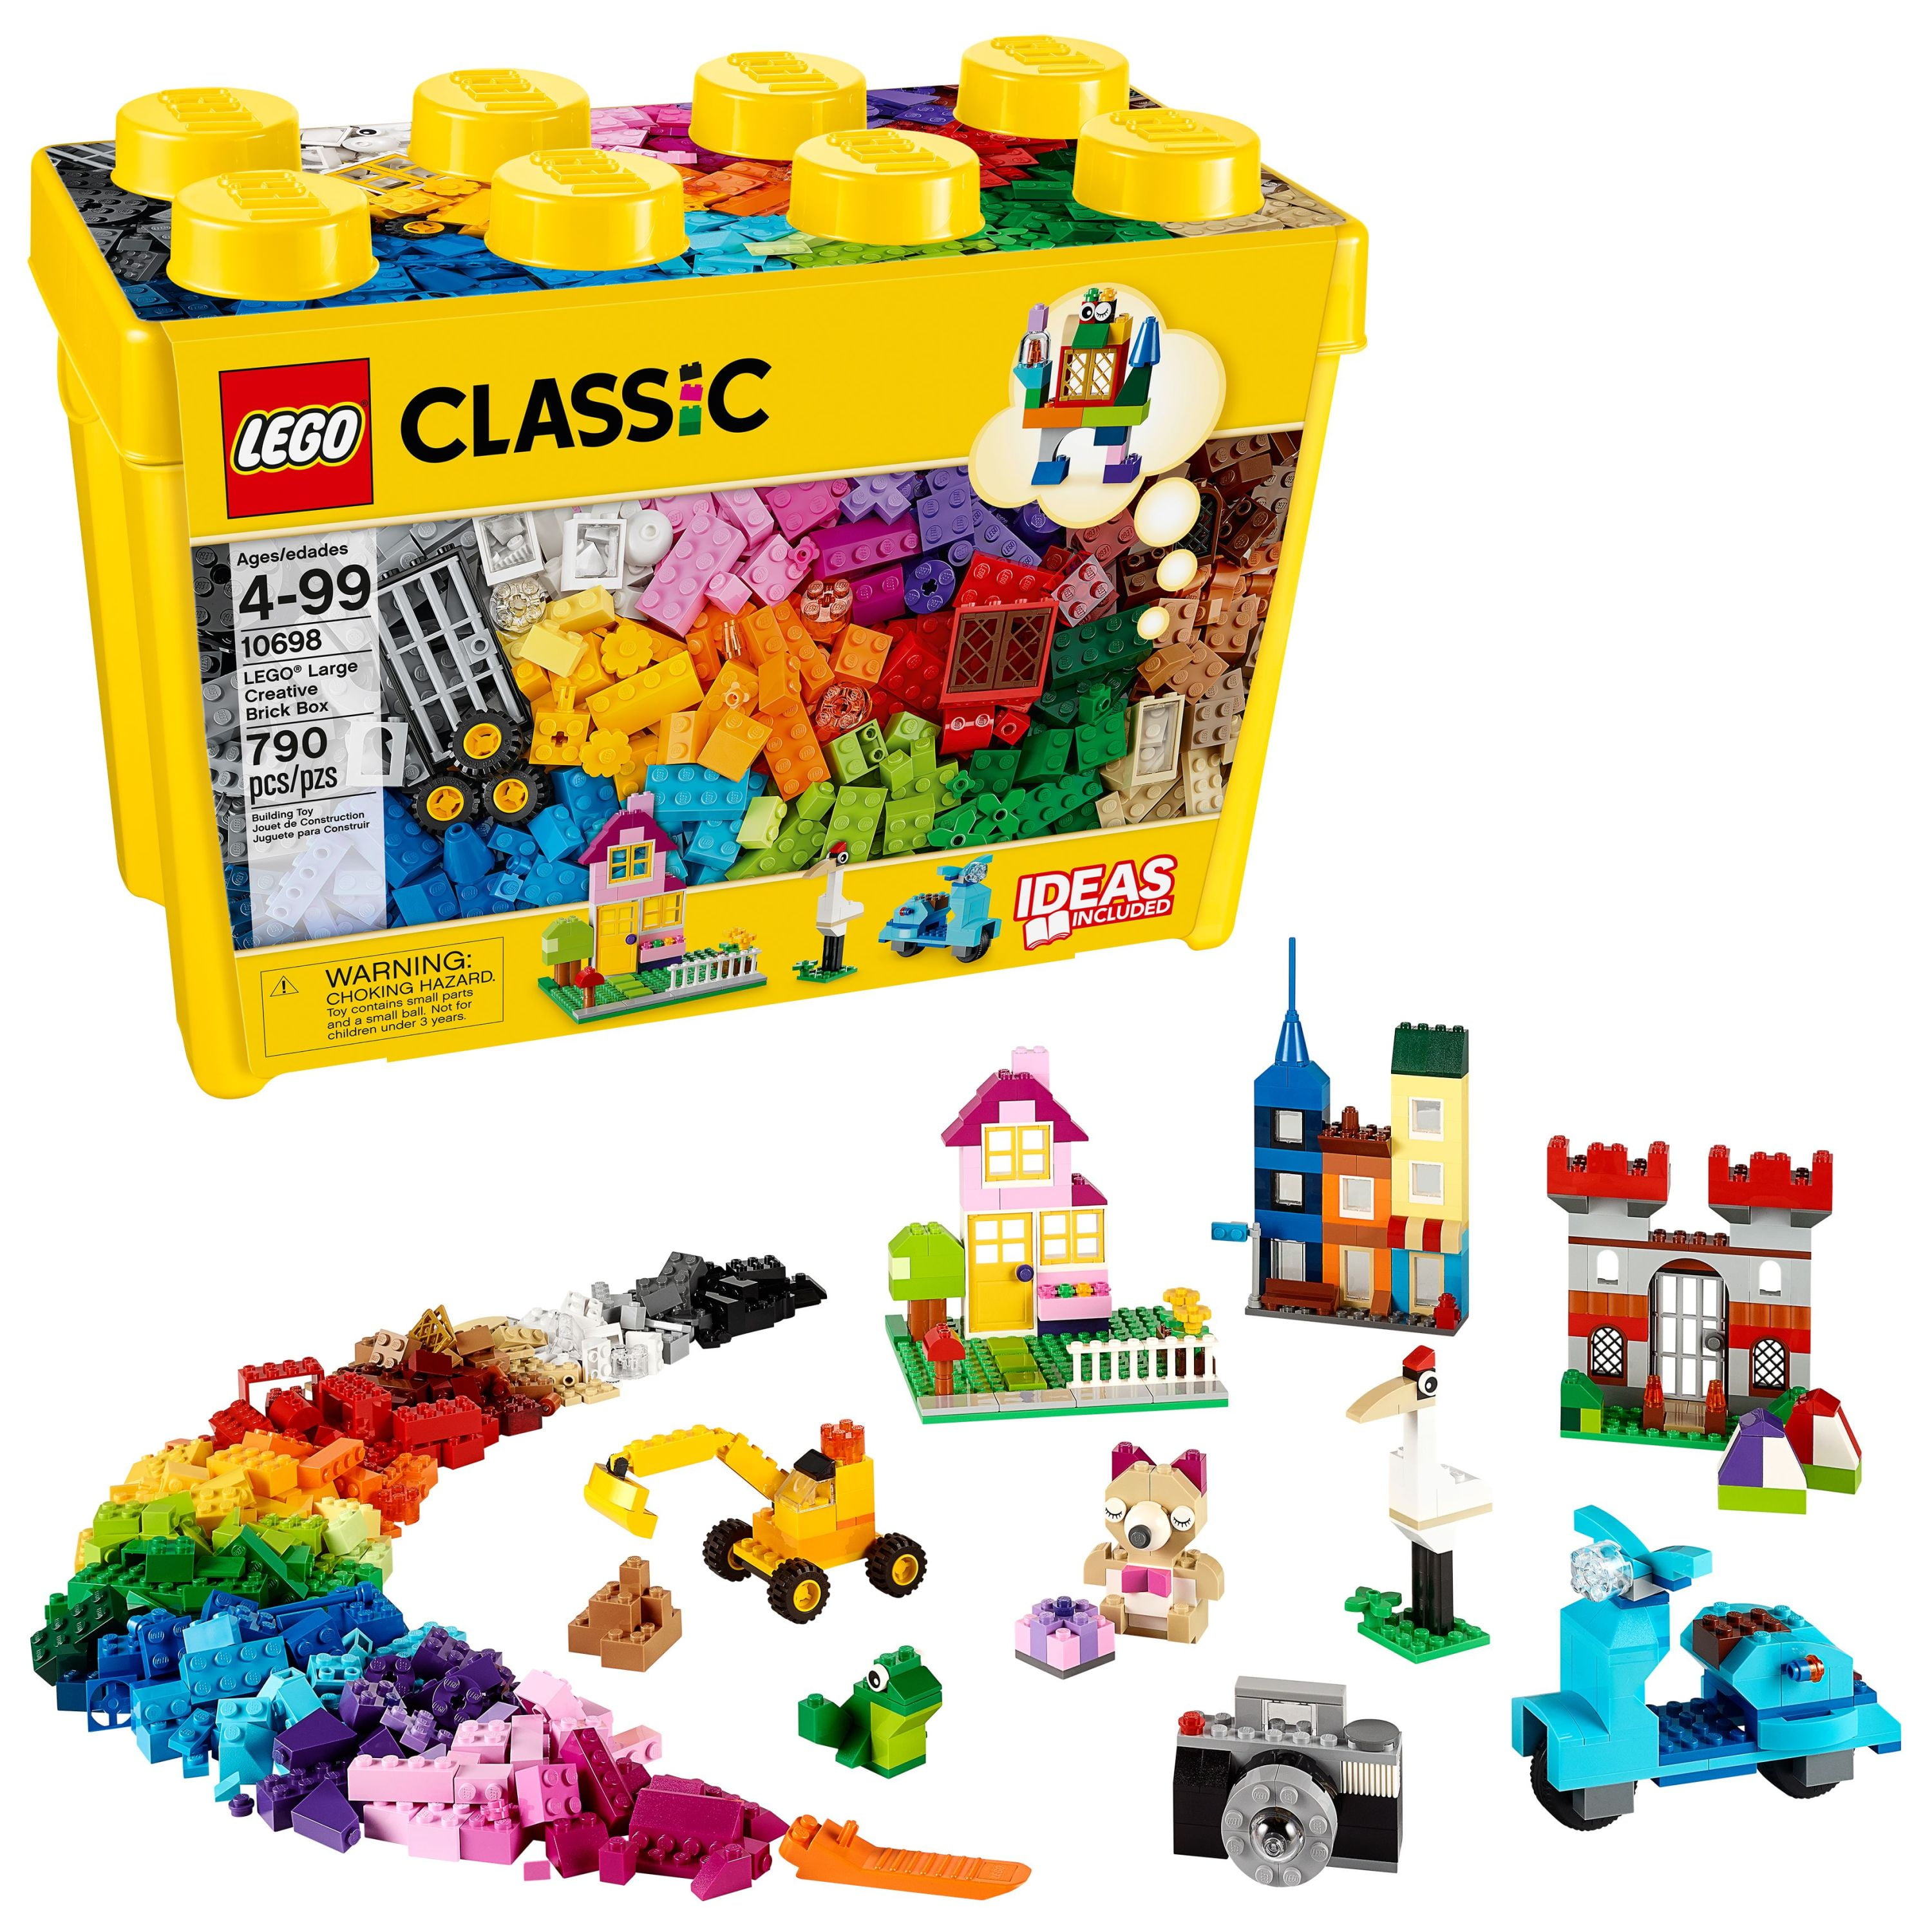 fjende Religiøs Vær opmærksom på LEGO Classic Large Creative Brick Box 10698 Building Toy Set (790 pcs) -  Walmart.com